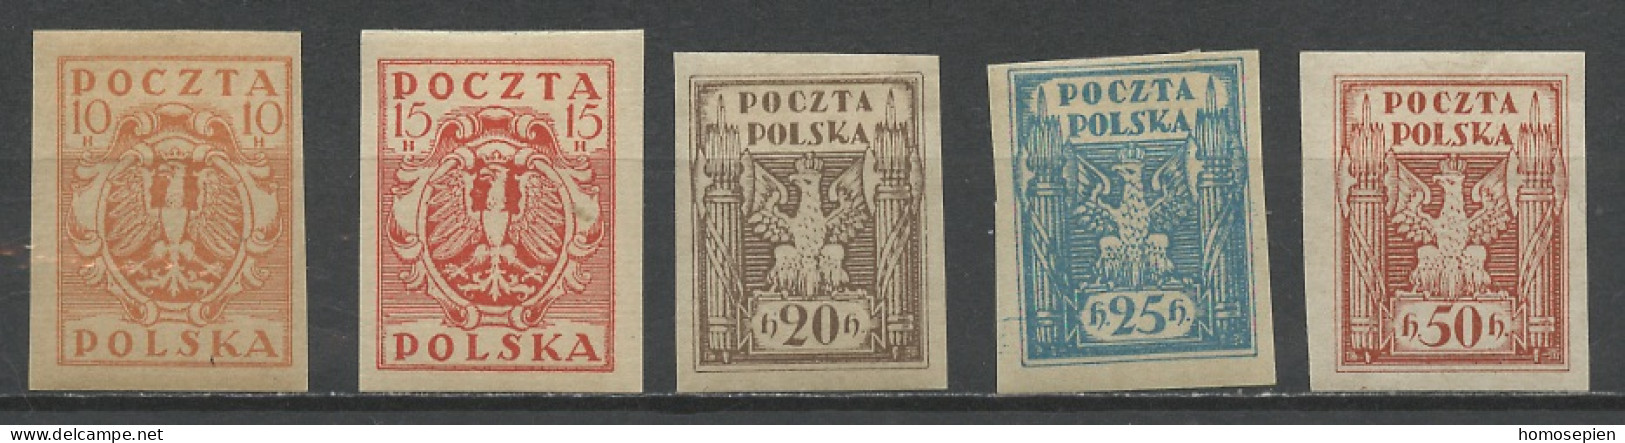 Pologne - Poland - Polen 1919 Y&T N°174 à 178 - Michel N°68 à 72 * - Sujets Divers - Neufs